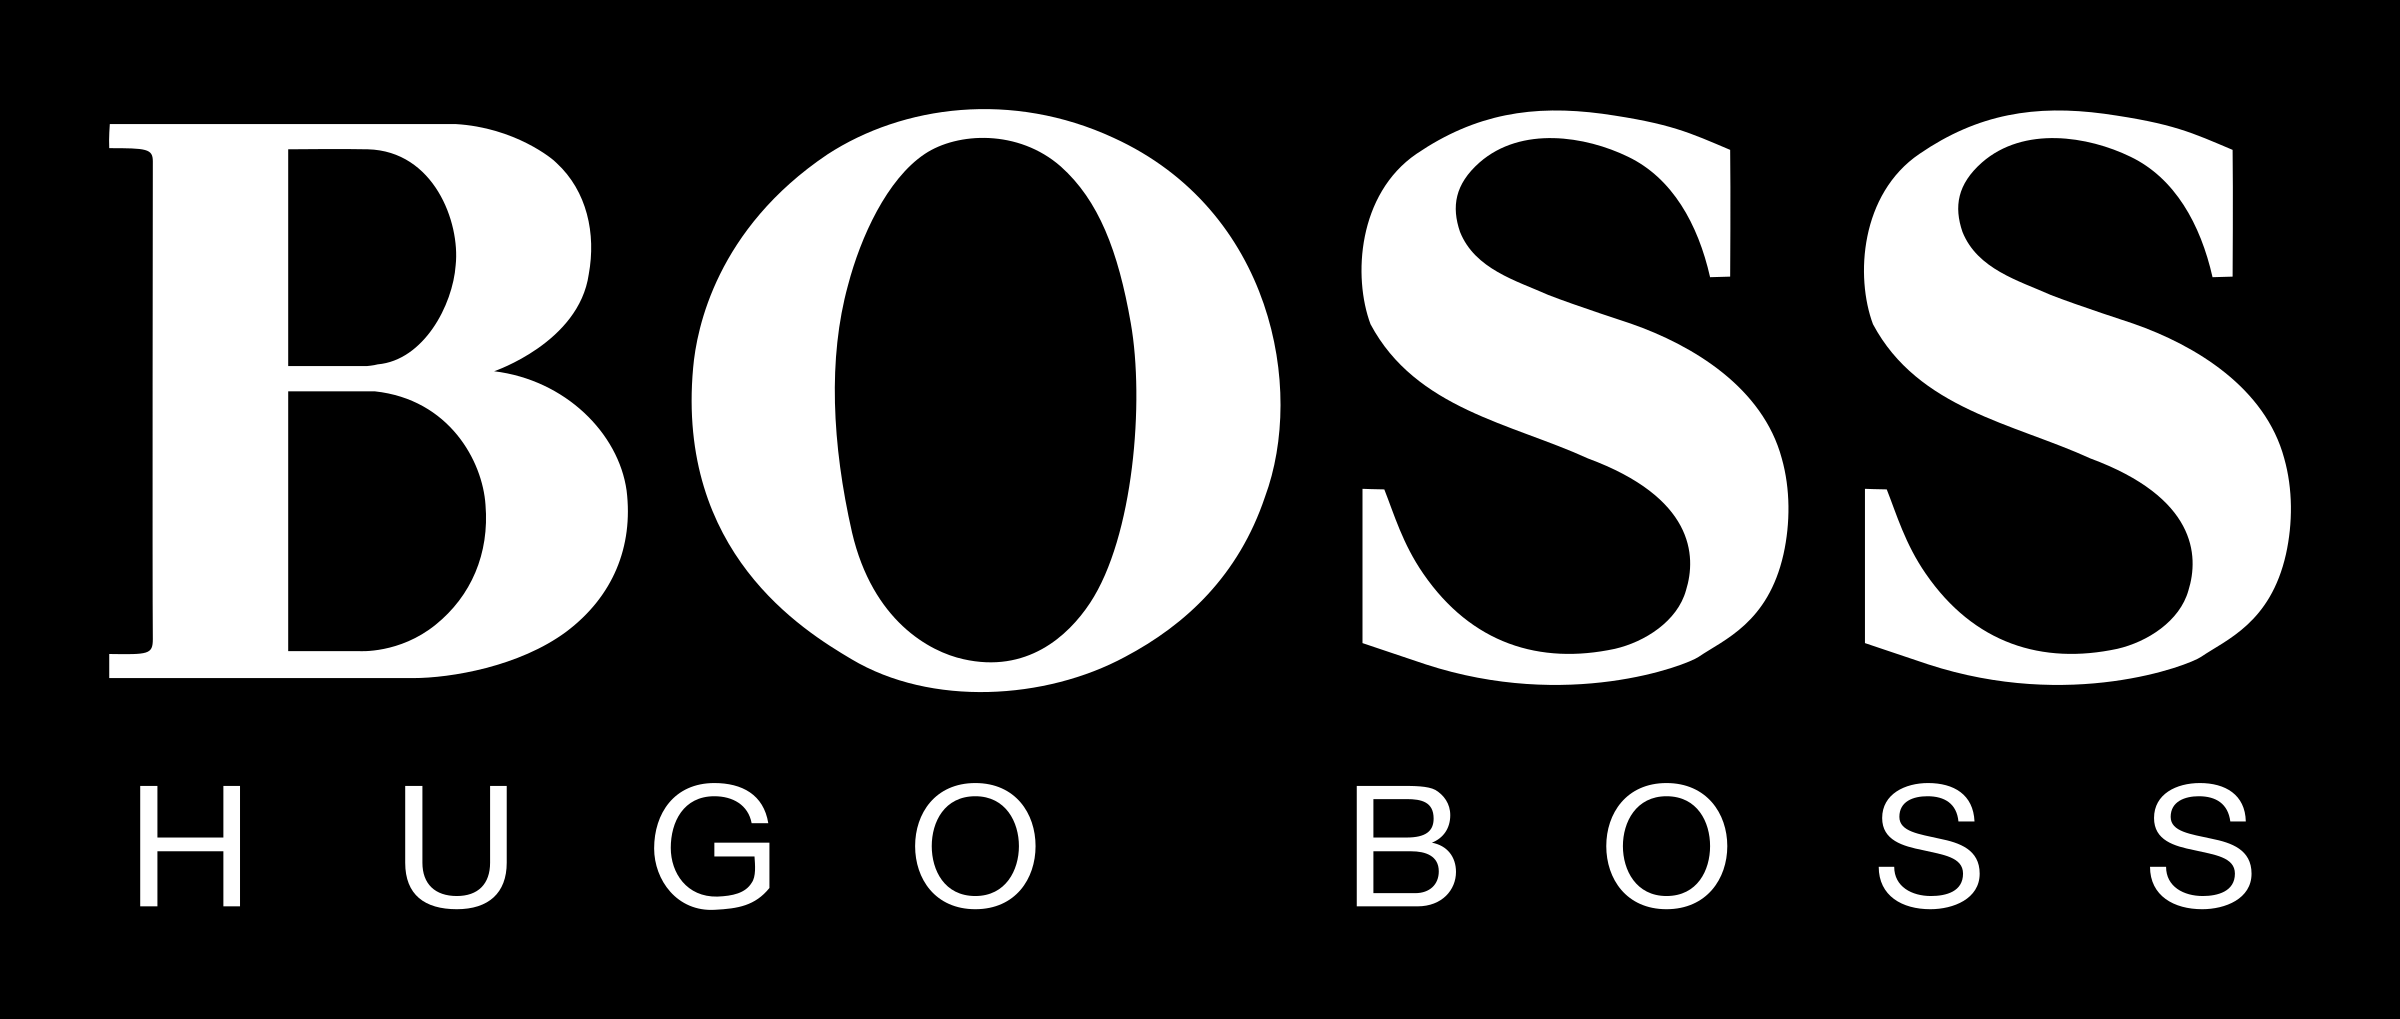 Hugo Boss logo black and whit